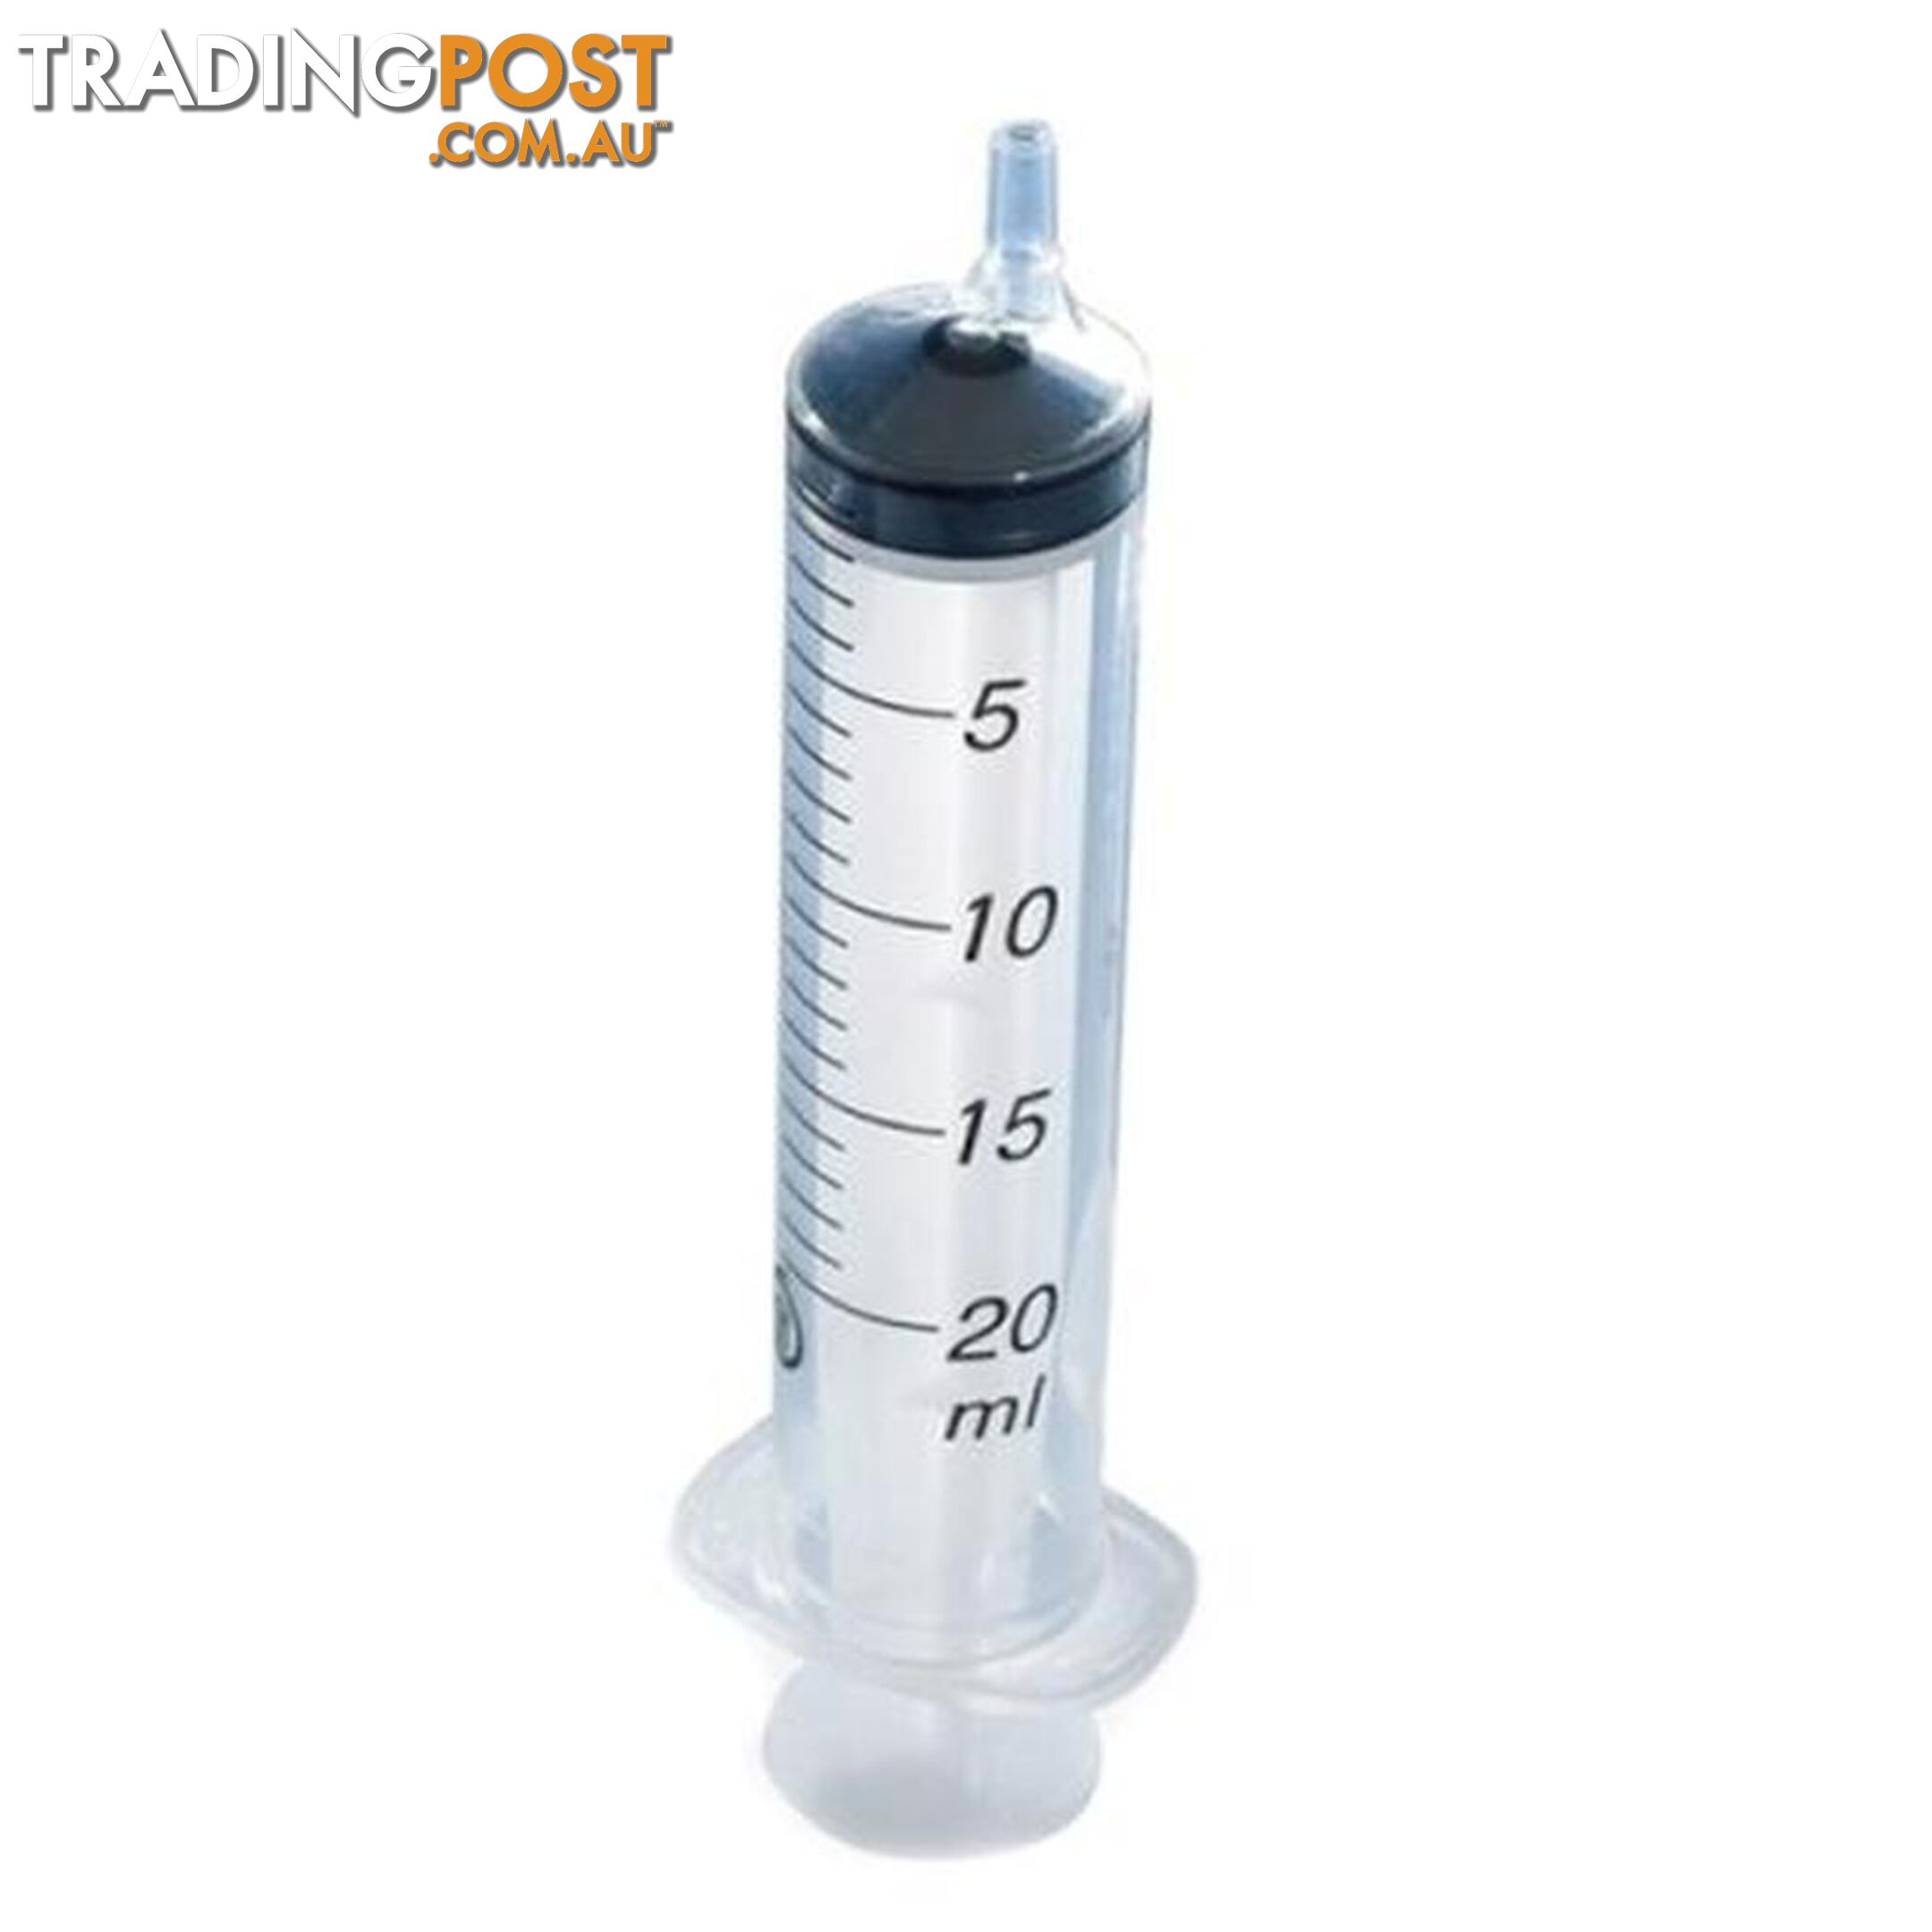 Terumo Eccentric Luer Slip Tip 20ml Plastic Syringes - Terumo - 9352827008921